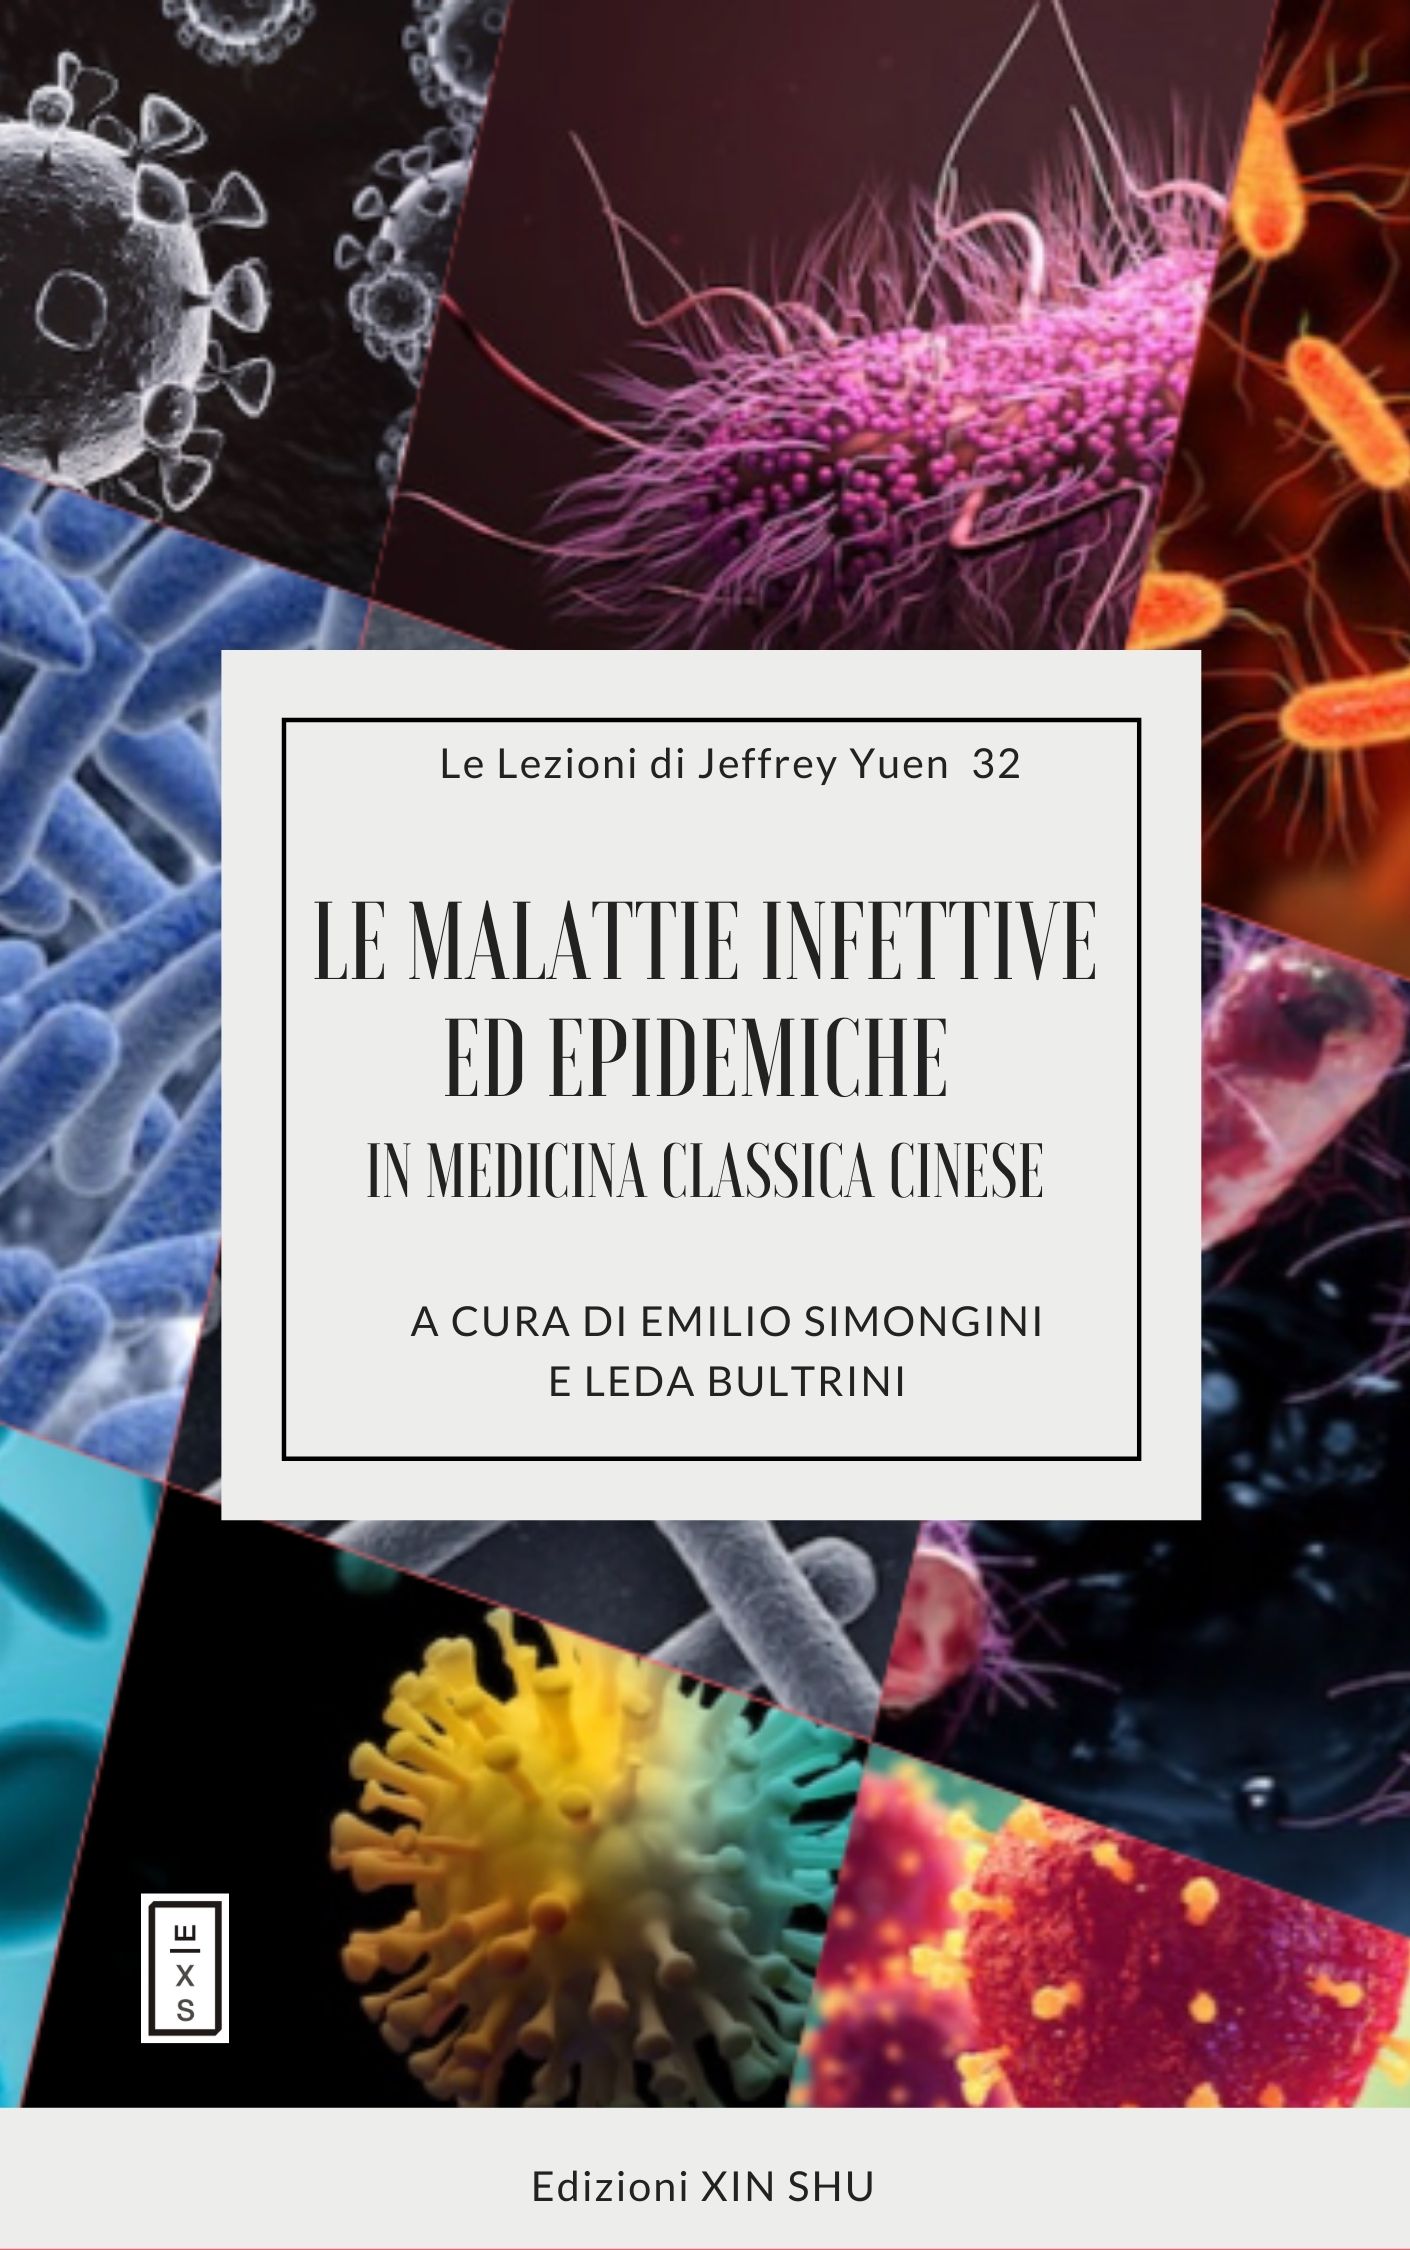 32 - Lezioni Jeffrey Yuen - Le malattie infettive ed epidemiche in medicina classica cinese